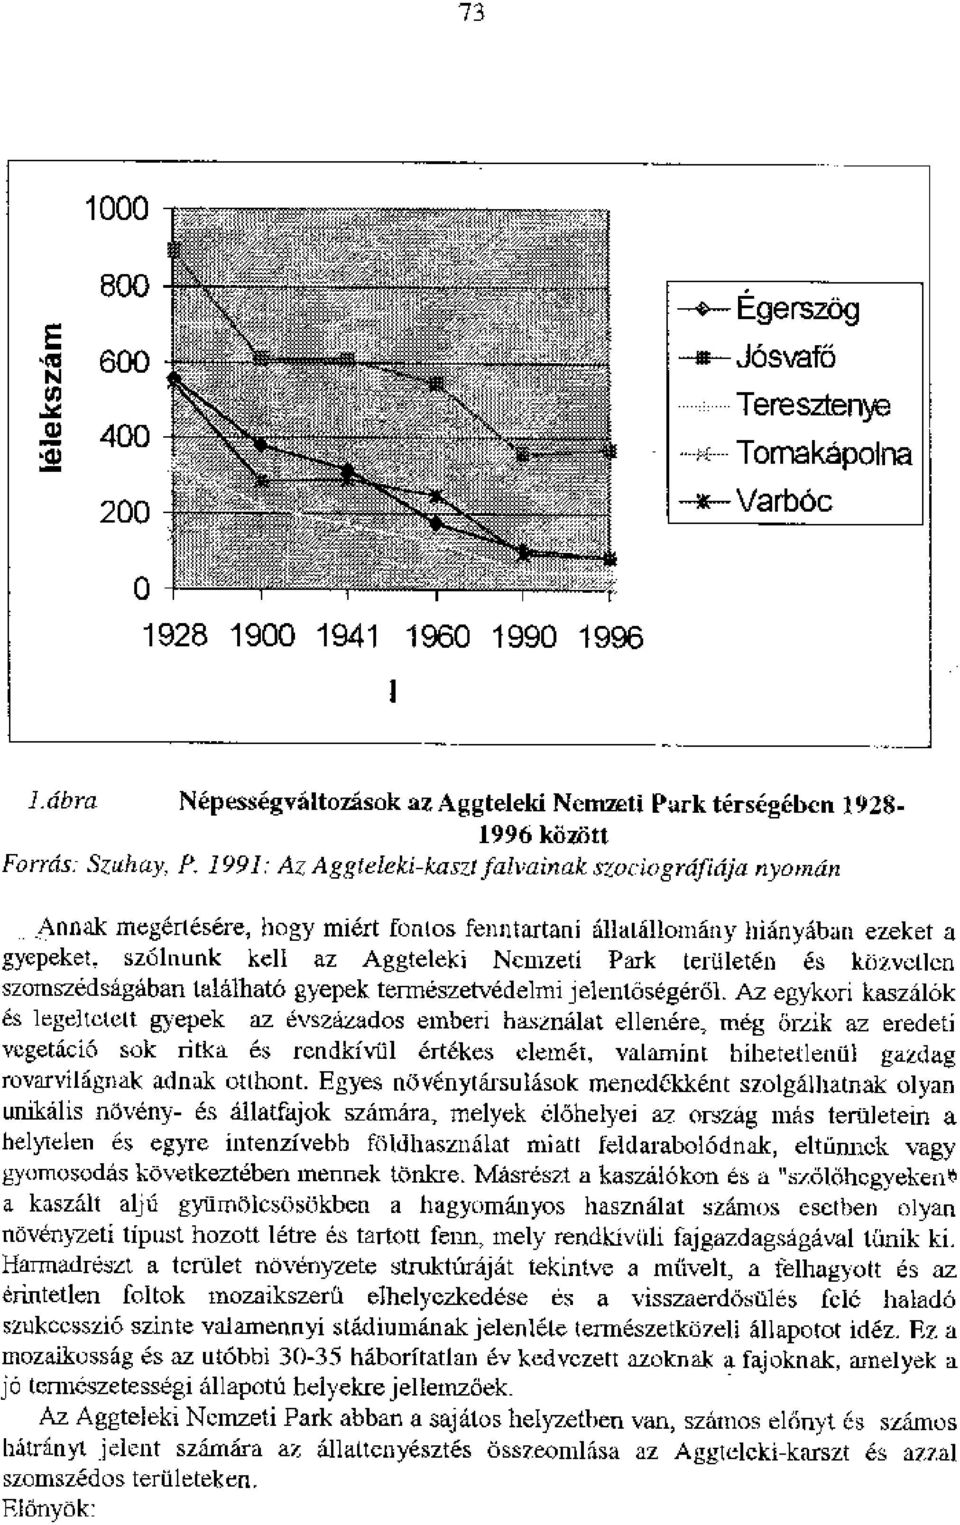 1991: Az Aggteleki-kaszt falvainak szociognificija nyoincin Annak megertesere, bogy miert fonios fenntartani 611atallomany inanydban ezeket a gyepeket.